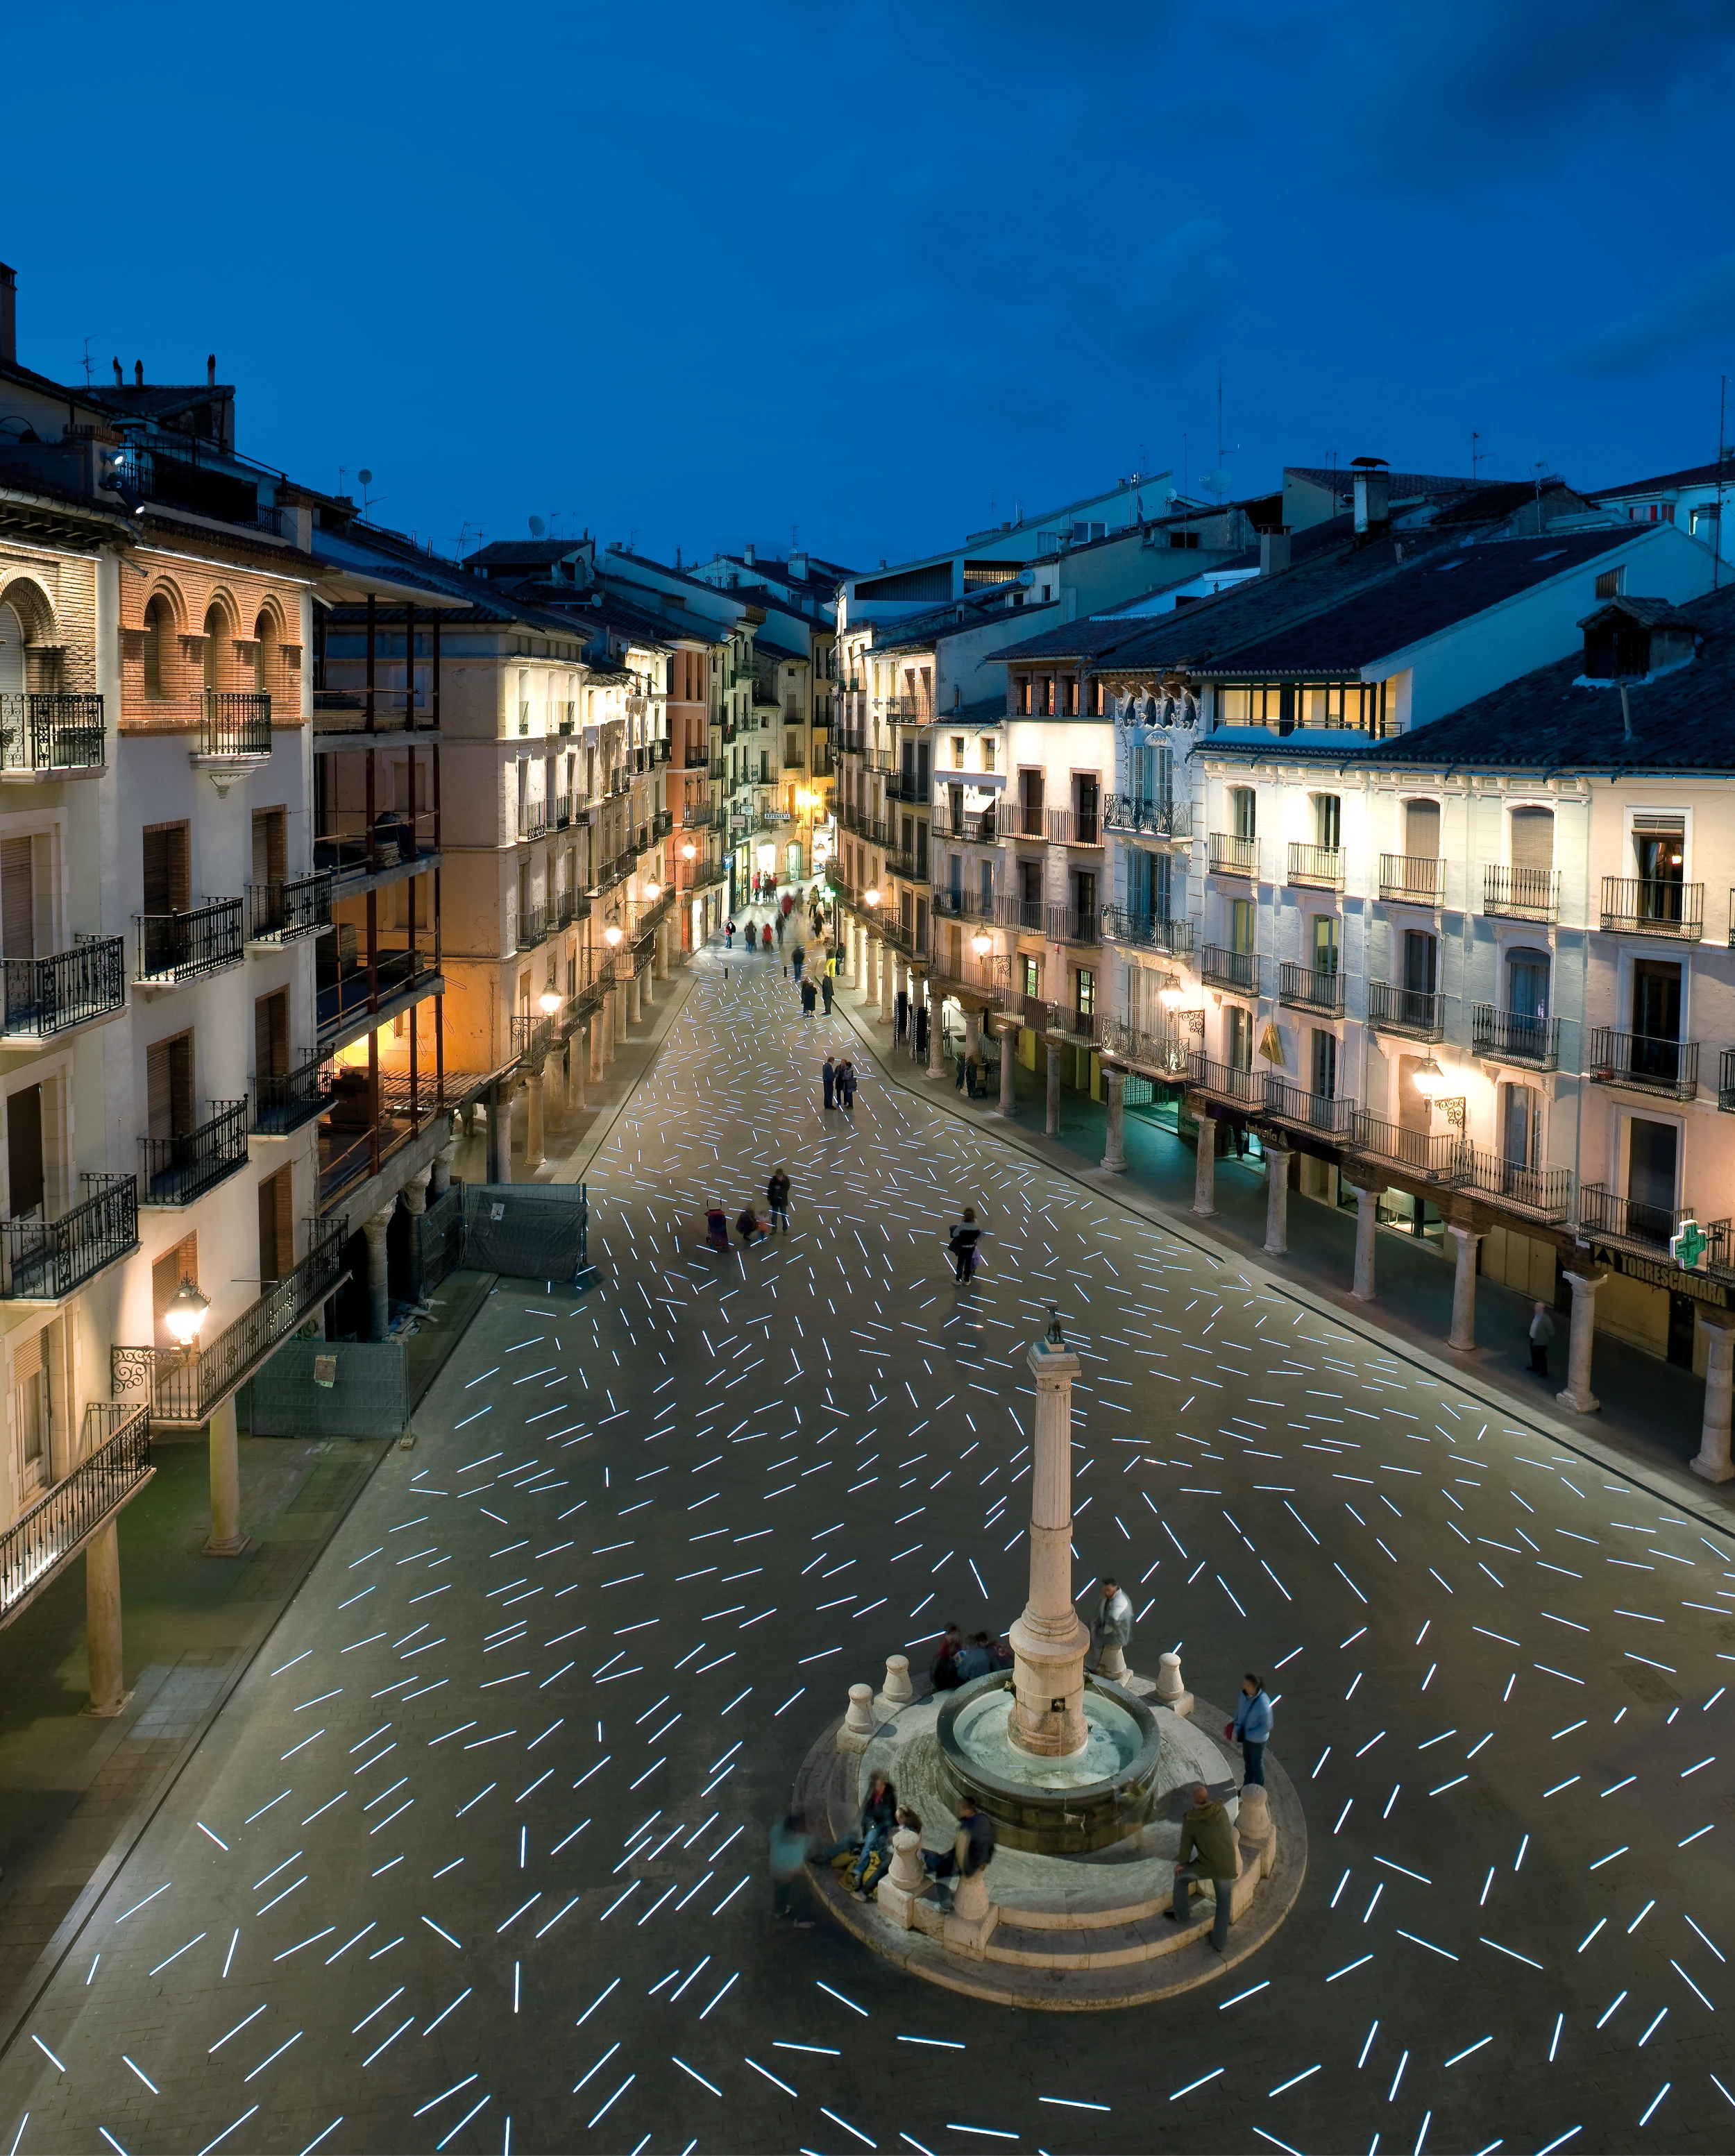 Torico Square, Teruel